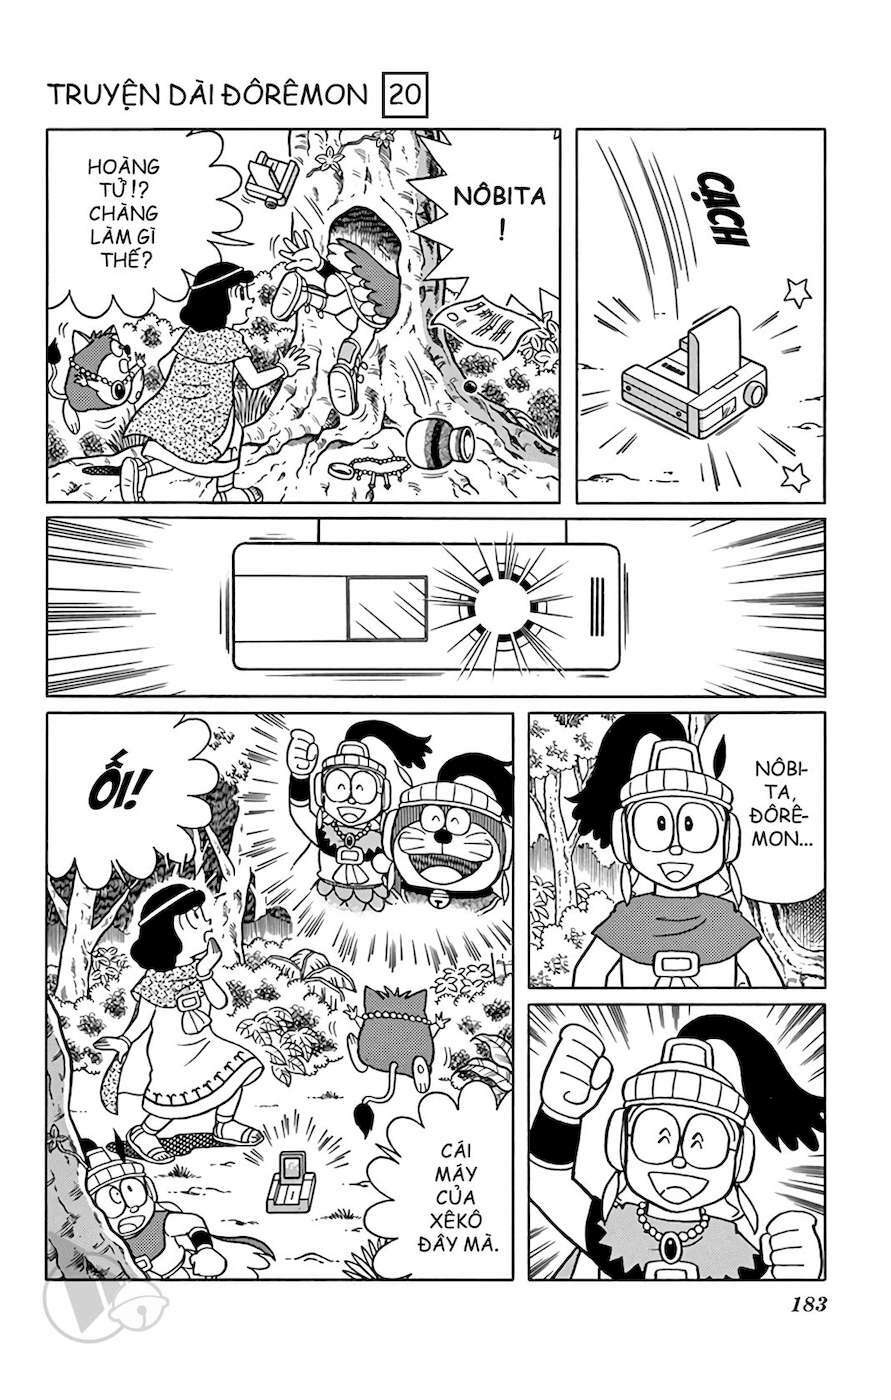 Truyện Tranh Doraemon: Truyền Thuyết Về Vua Mặt Trời Nôbita trang 182